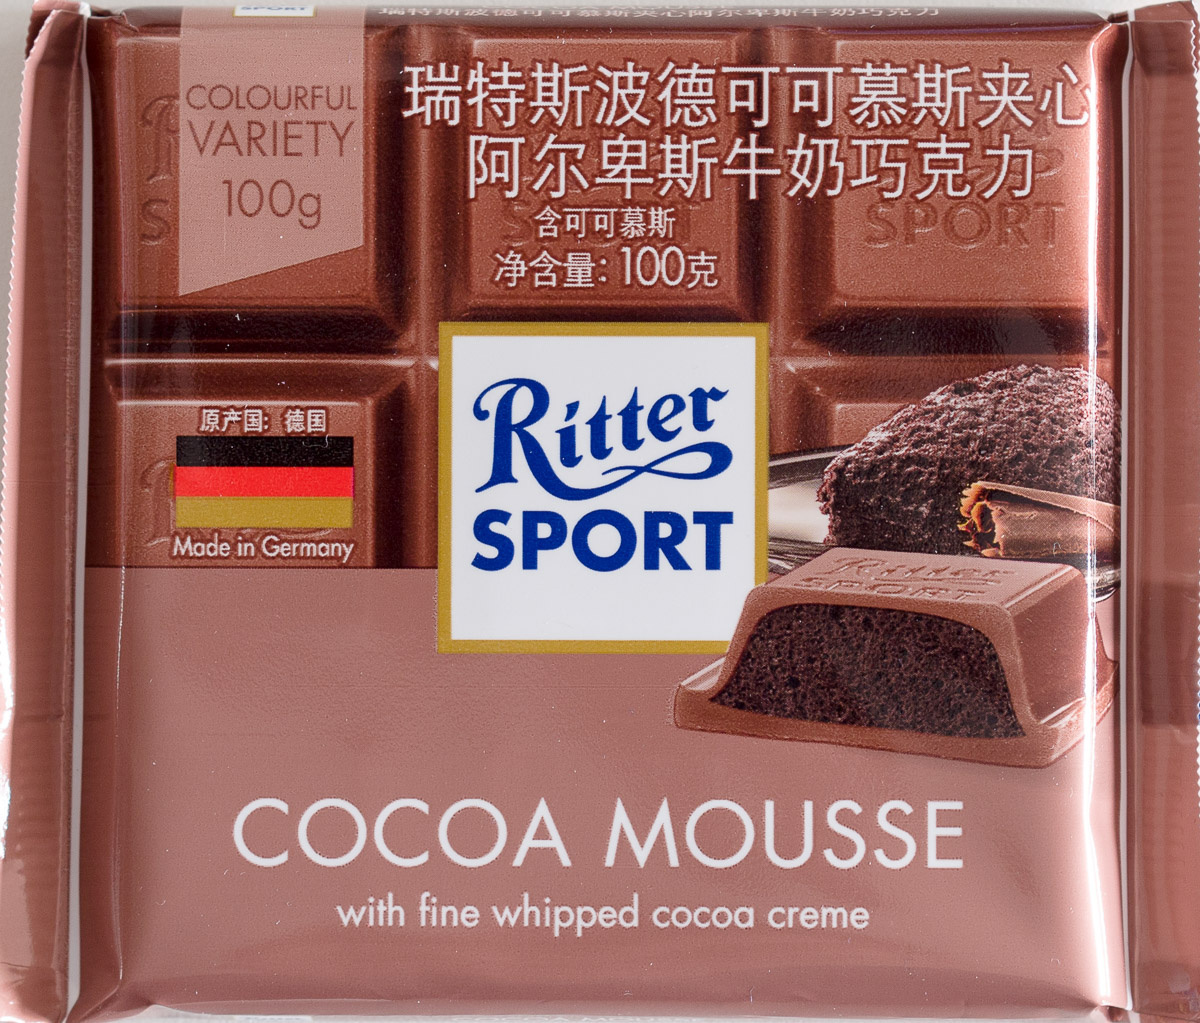 Cocoa Mousse - 产品